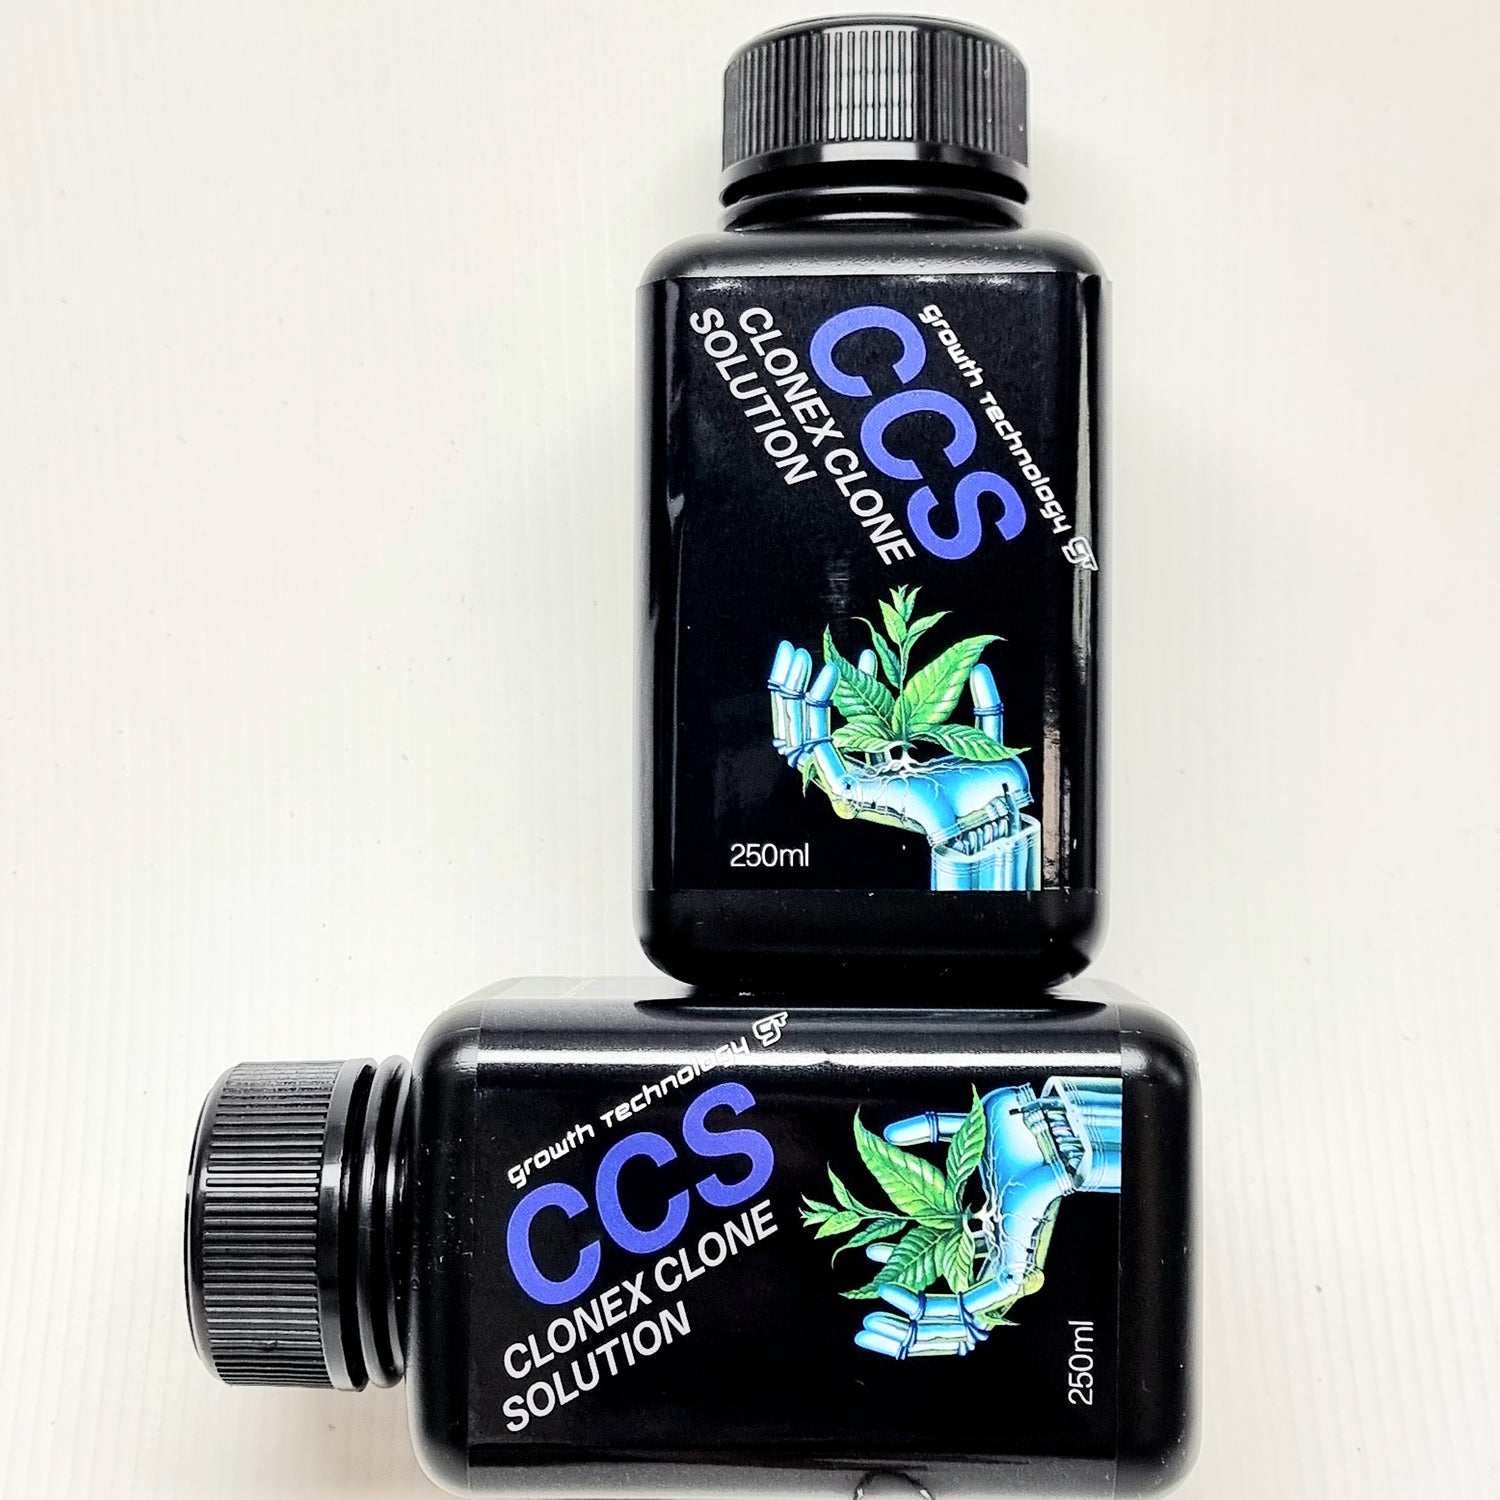 GT CCS (Clonex Clone Solution), 250ml for sale in Perth WA